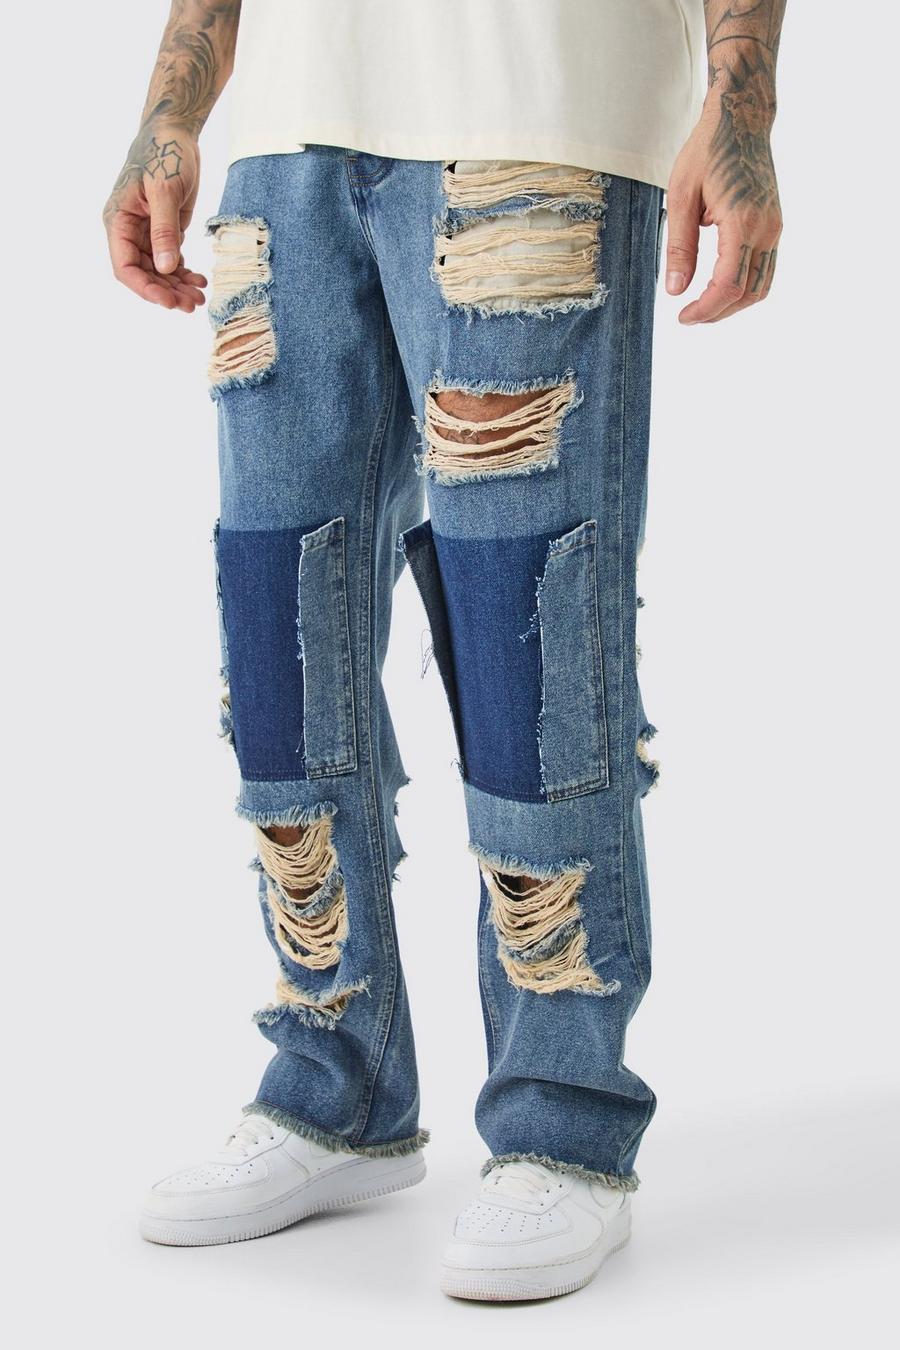 Jeans Tall rilassati in denim rigido effetto smagliato, Antique wash